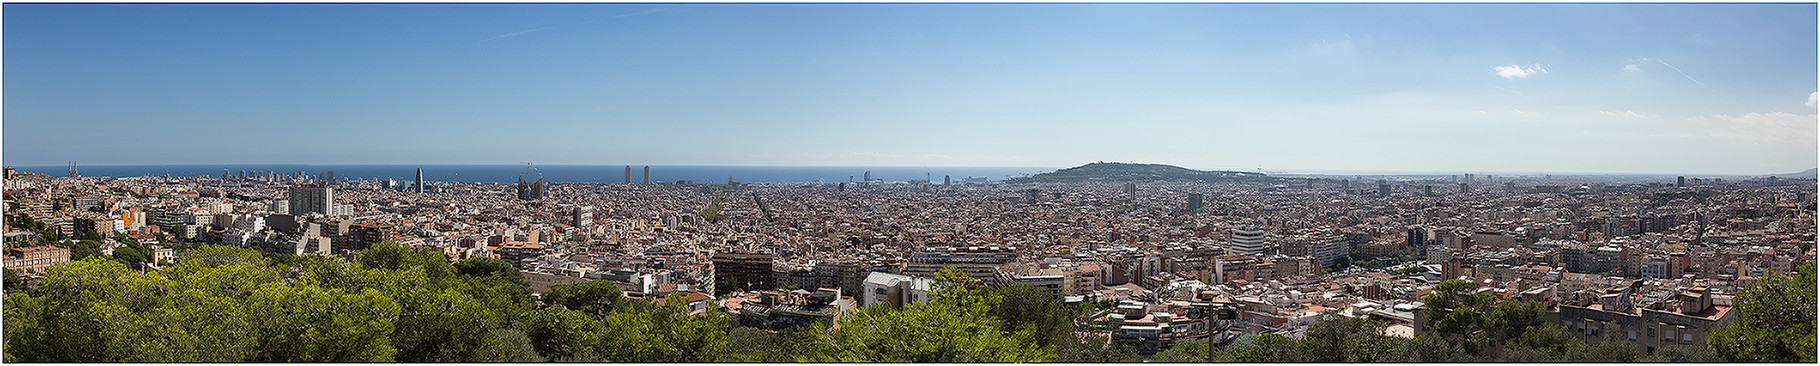 Barcelona, Rundblick vom Parc Güell, 2015 | Canon EOS 6D  32 mm  1/400 Sek.  f/13  ISO 200